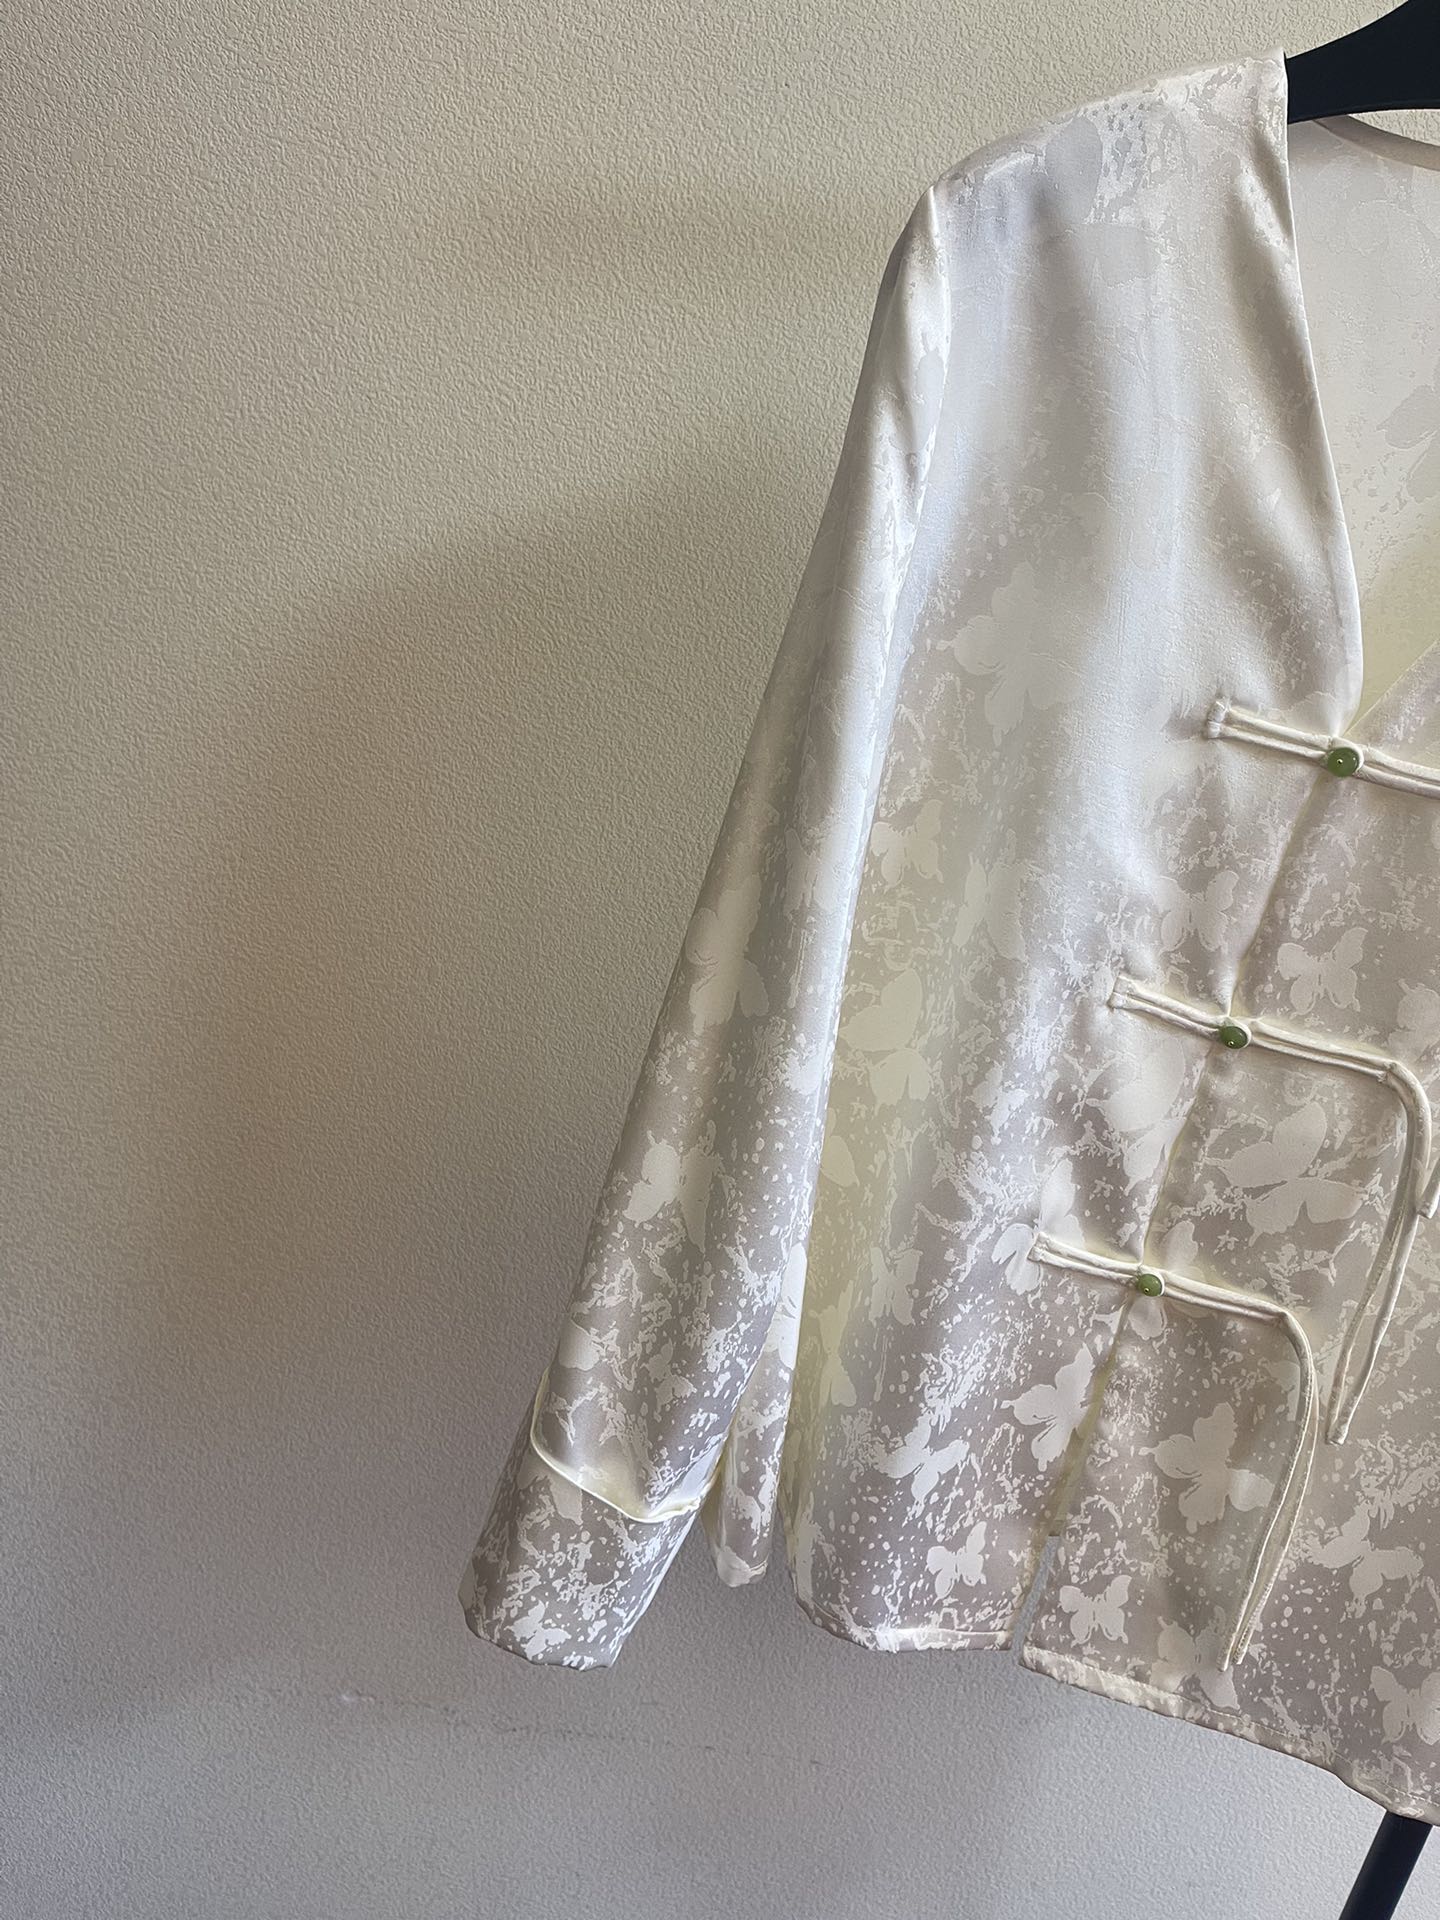 春夏新中式提花V领上衣定制扛皱提花面料整个布面质地紧密呈现3D立体浮雕肌理感中式V领设计版型简洁大气碧绿